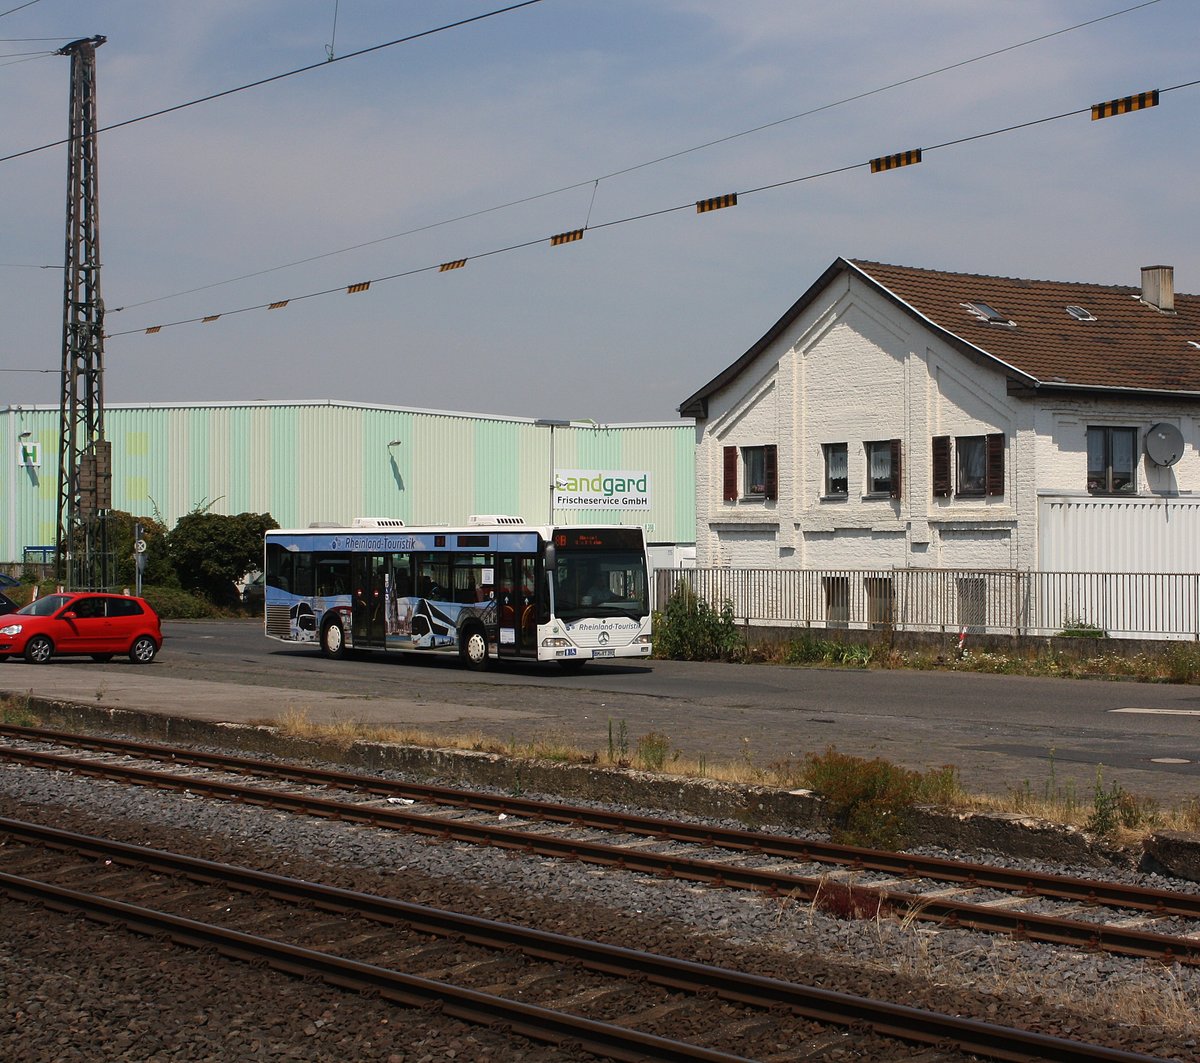 Ein Bus der RVK (Rheinland-Touristik) auf der Linie 818 (Hersel-Stadtbahn - Sechtem BF) beim verlassen der Haltestelle Roisdorf Bahnhof in Richtung Hersel-Stadtbahn.
Foto entstand auf dem Bahnsteig in Roisdorf.

Bornheim Roisdorf
20.07.2018